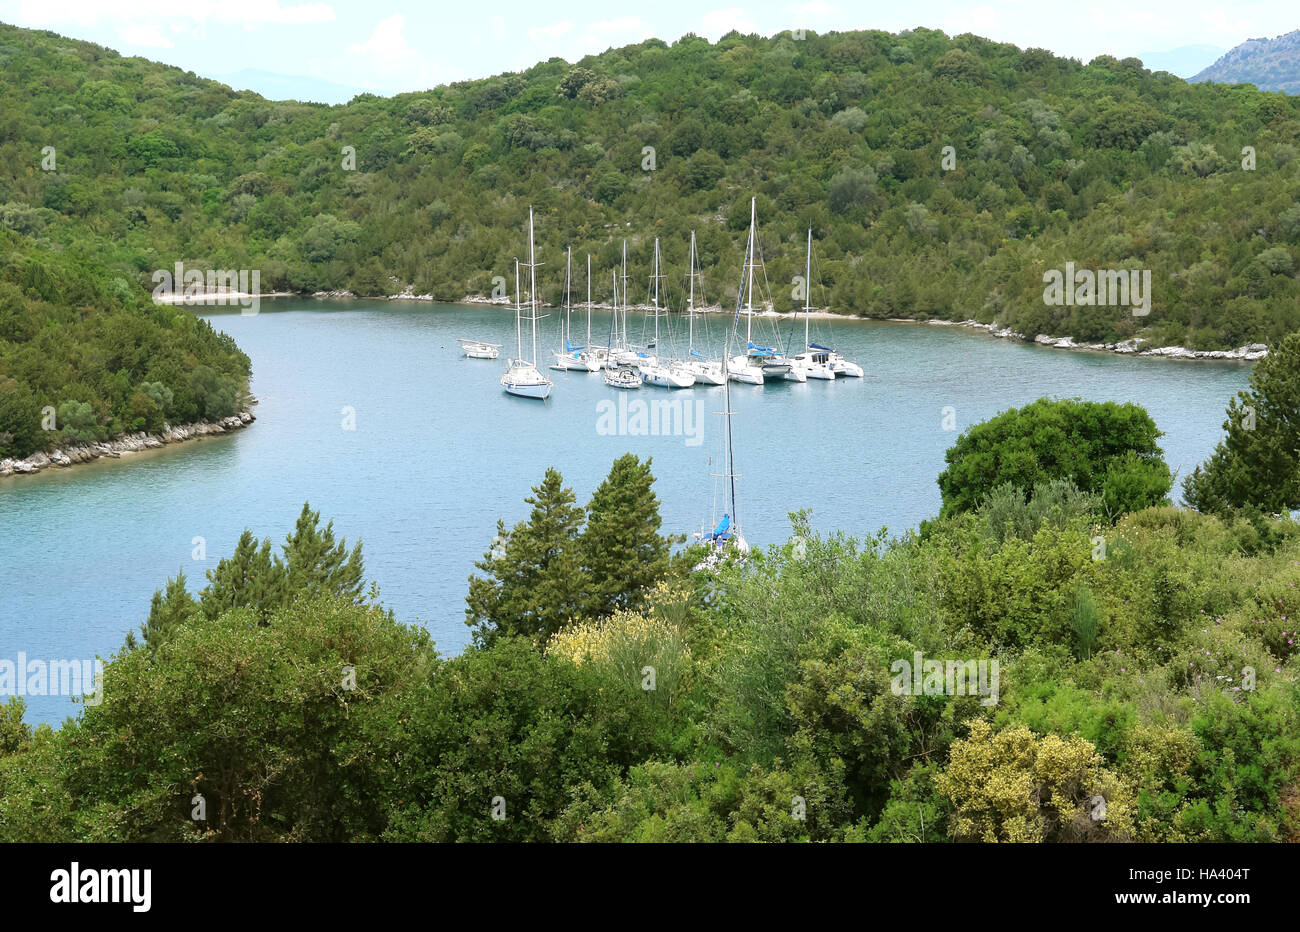 Sivota, Griechenland, 9. Mai 2013: Landschaft mit grünen Insel, Berge und Yachten in Emerald Bay im Ionischen Meer, Griechenland. Stockfoto